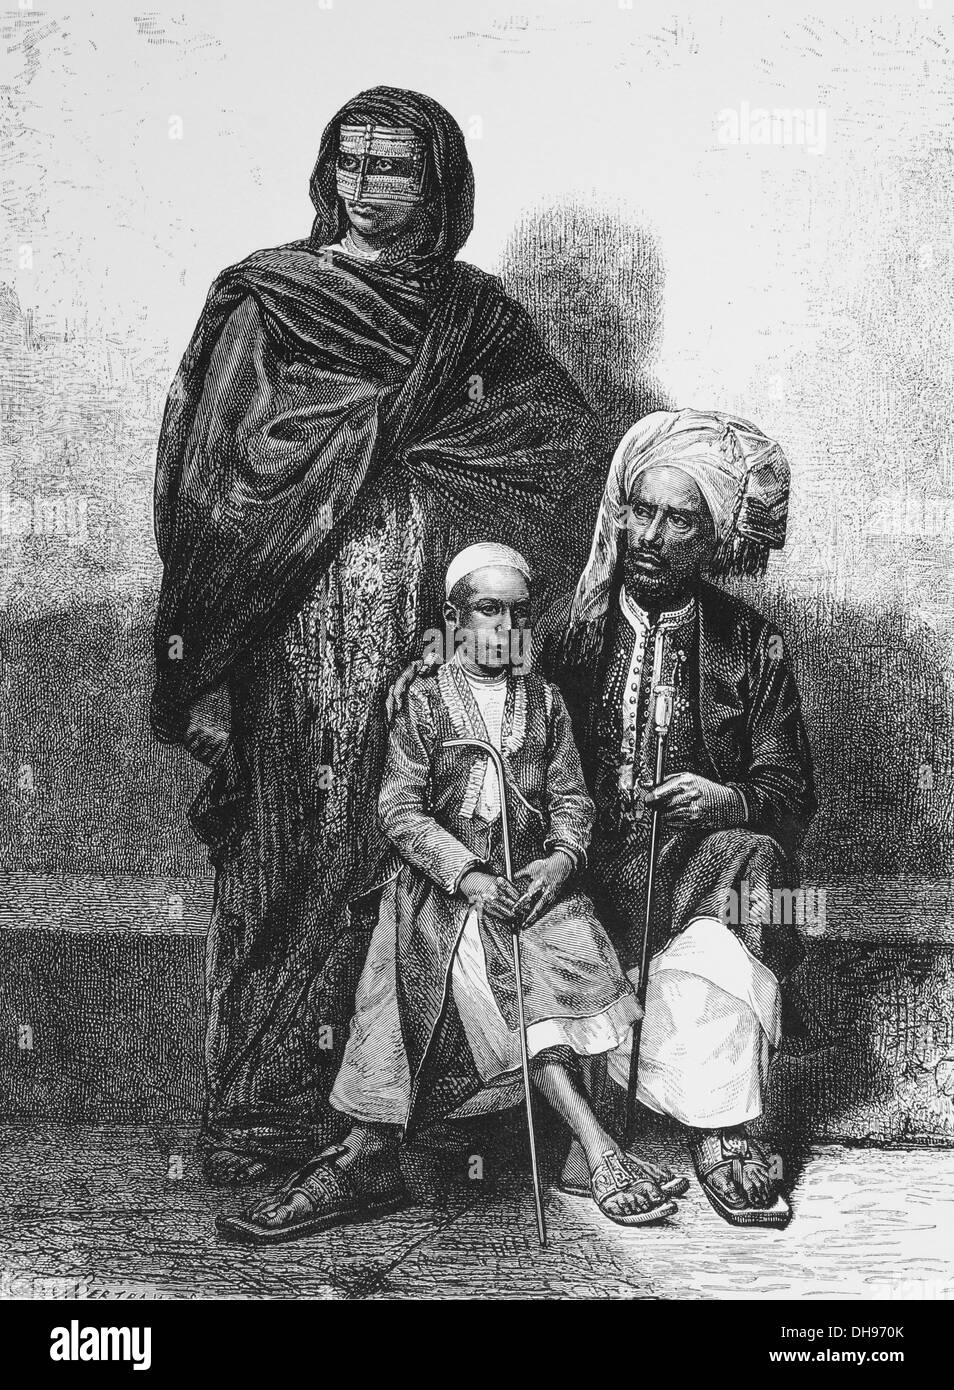 Afrika. Zanzibar. Arabische Familie, 1880. Gravur. Stockfoto